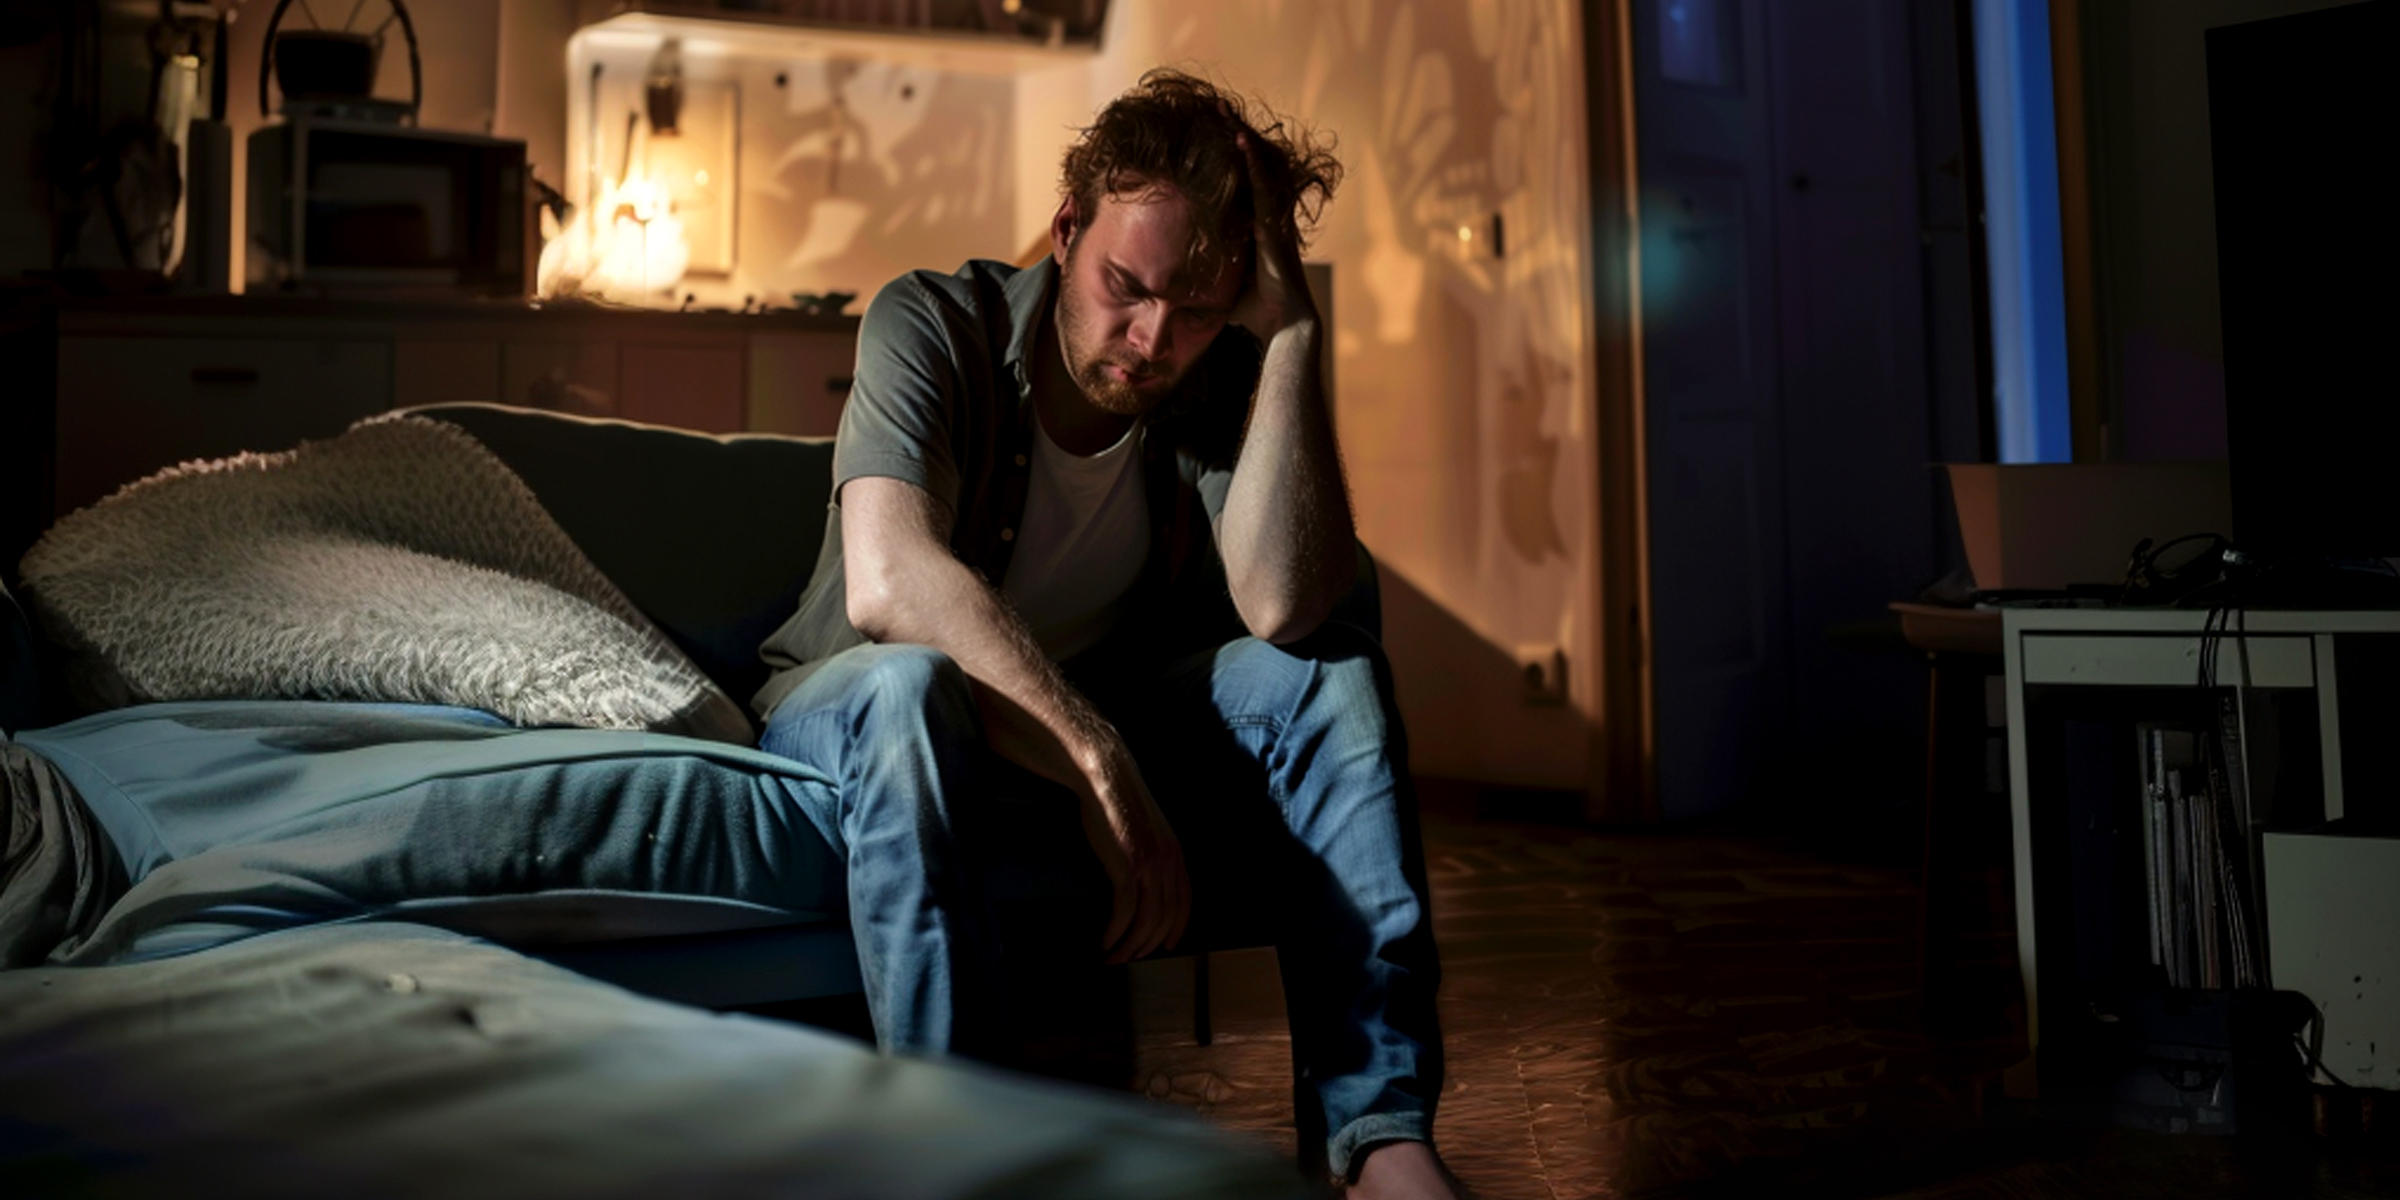 Un homme en détresse assis dans une pièce sombre | Source : Midjourney